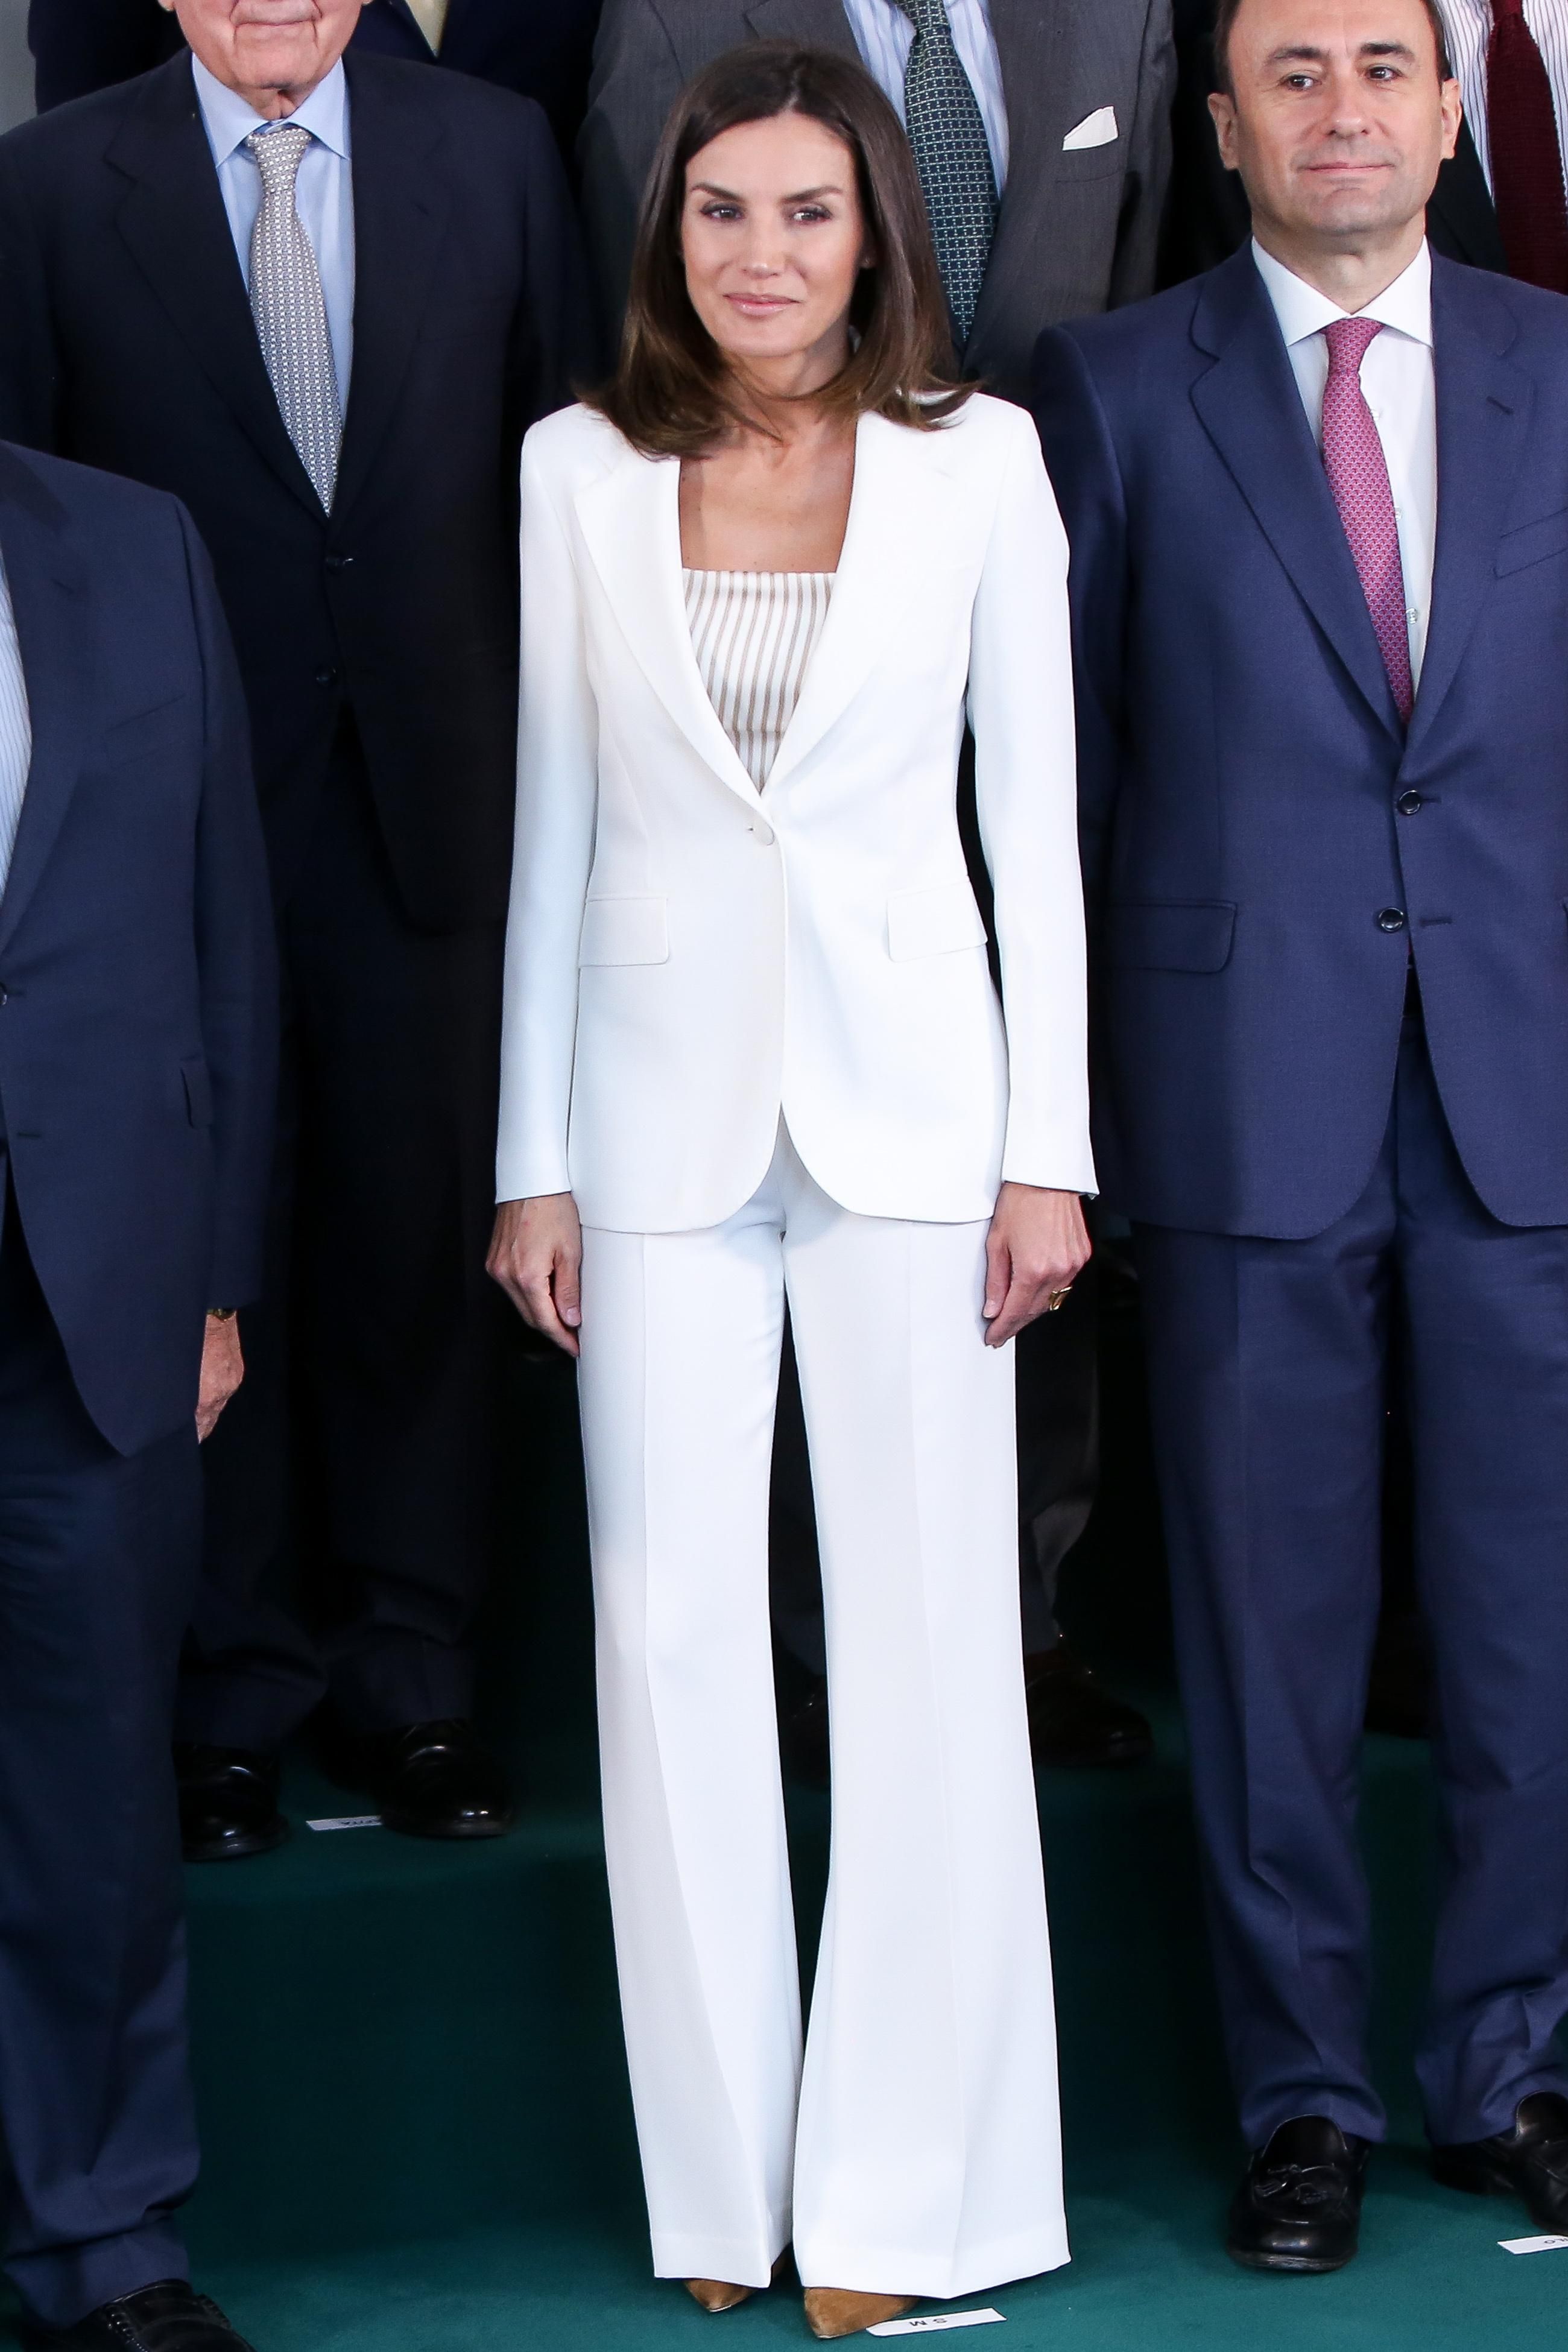 Total look: королева Испании ошеломила белоснежным образом - яркие фото